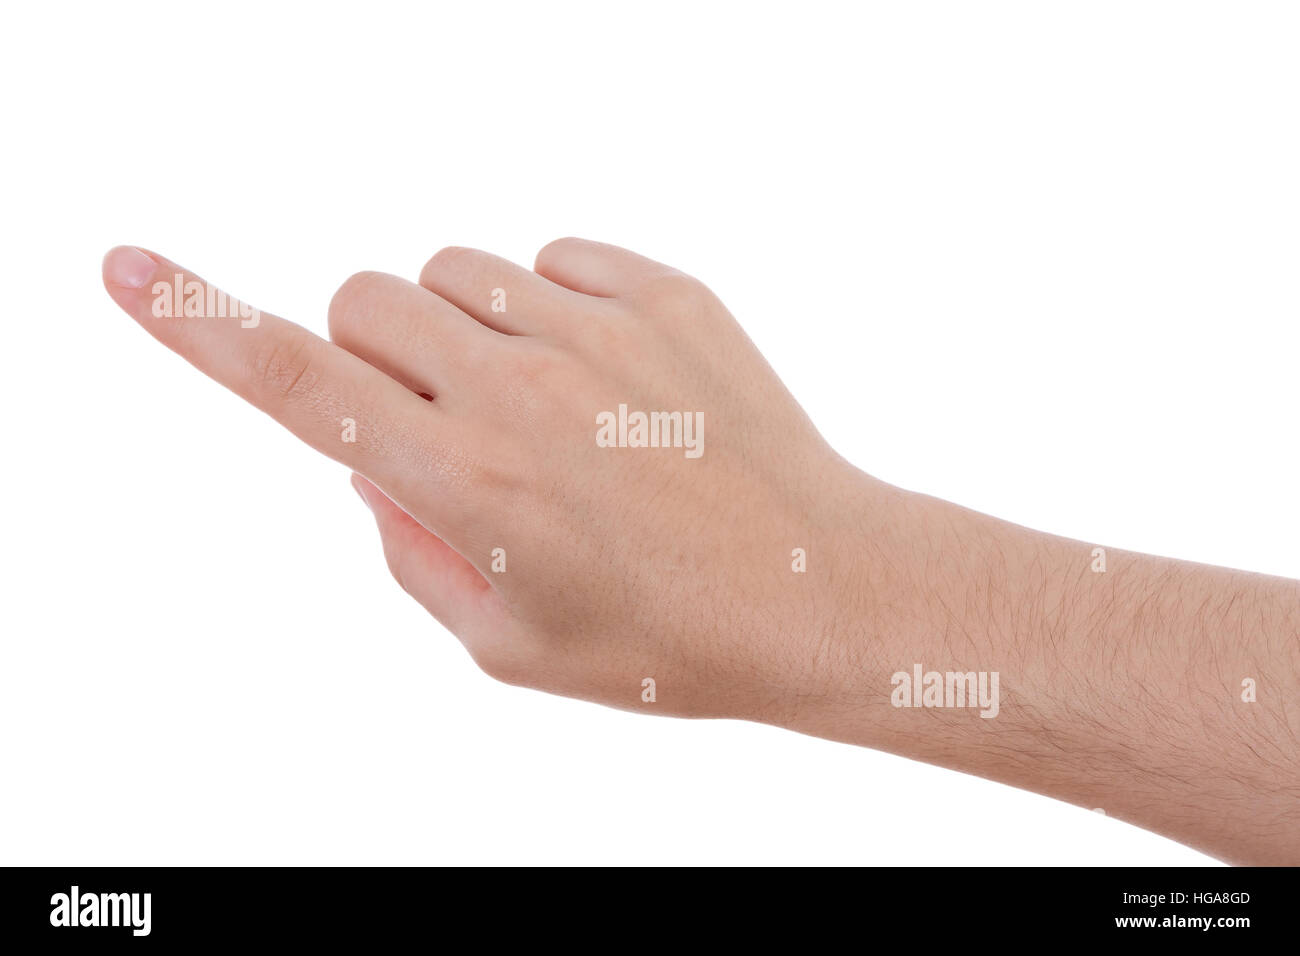 Puntamento a mano, toccando o premendo isolati su sfondo bianco. Femmina caucasica. Foto Stock